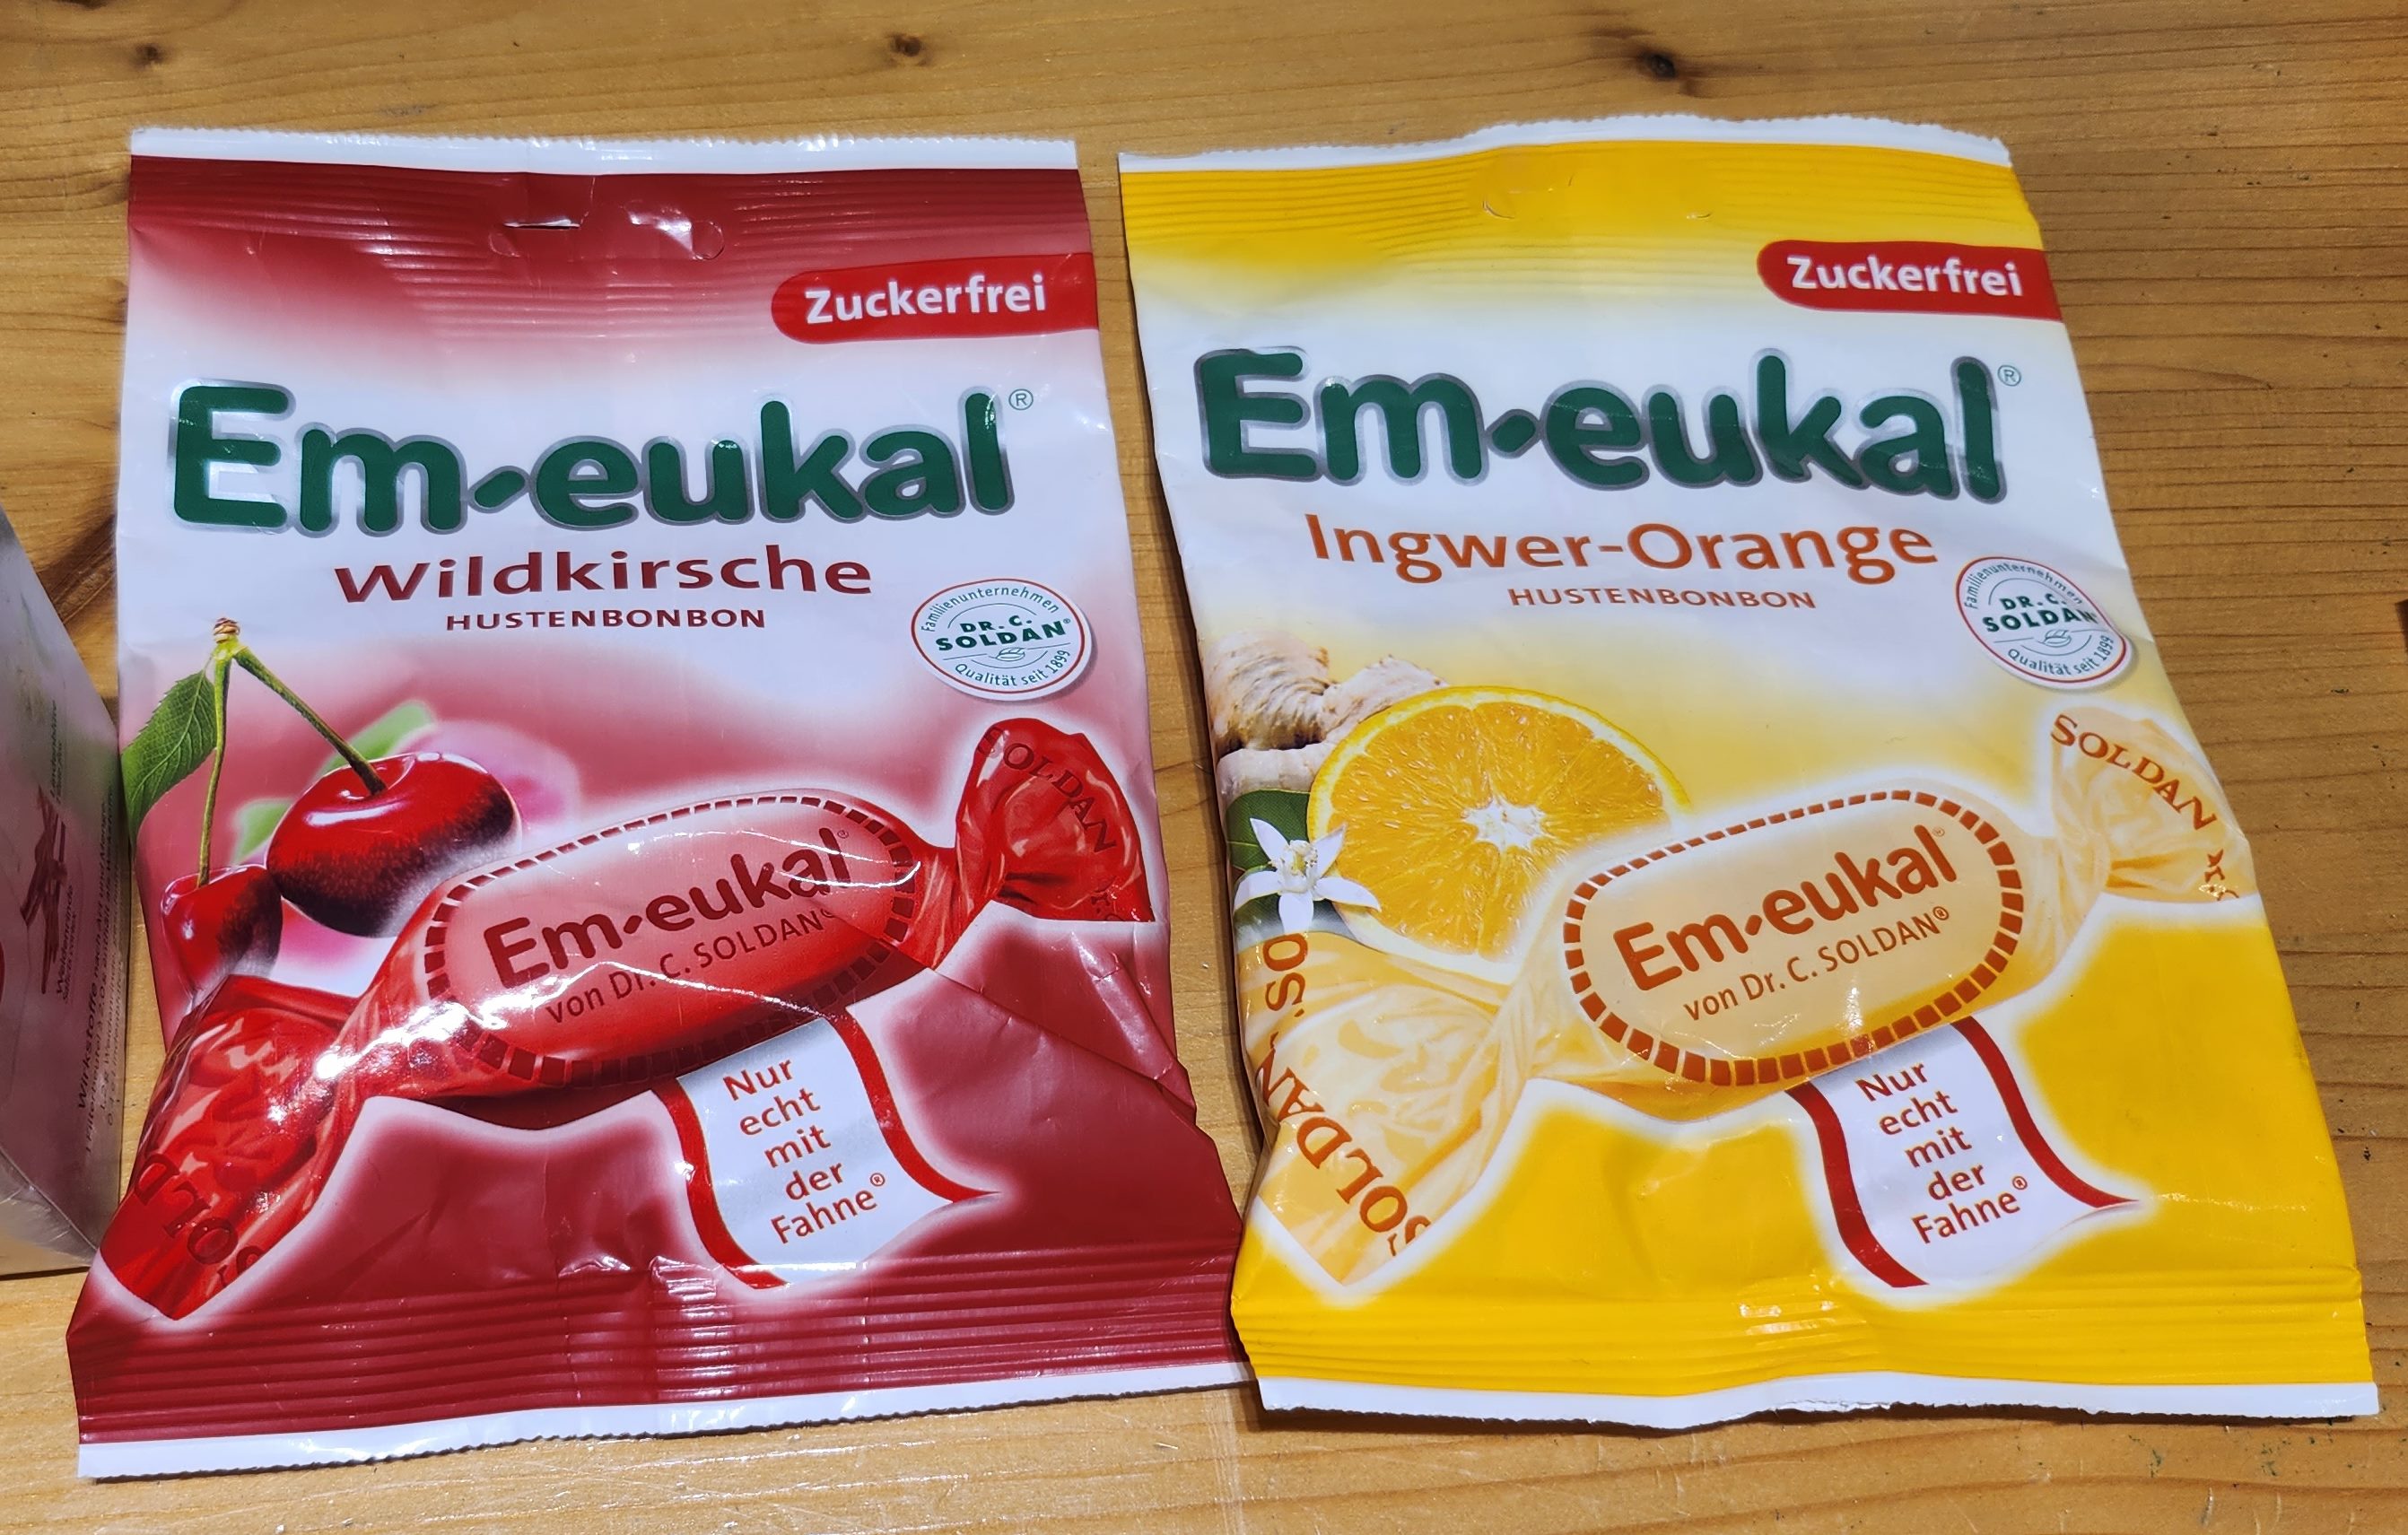 Em-eukal 감기사탕